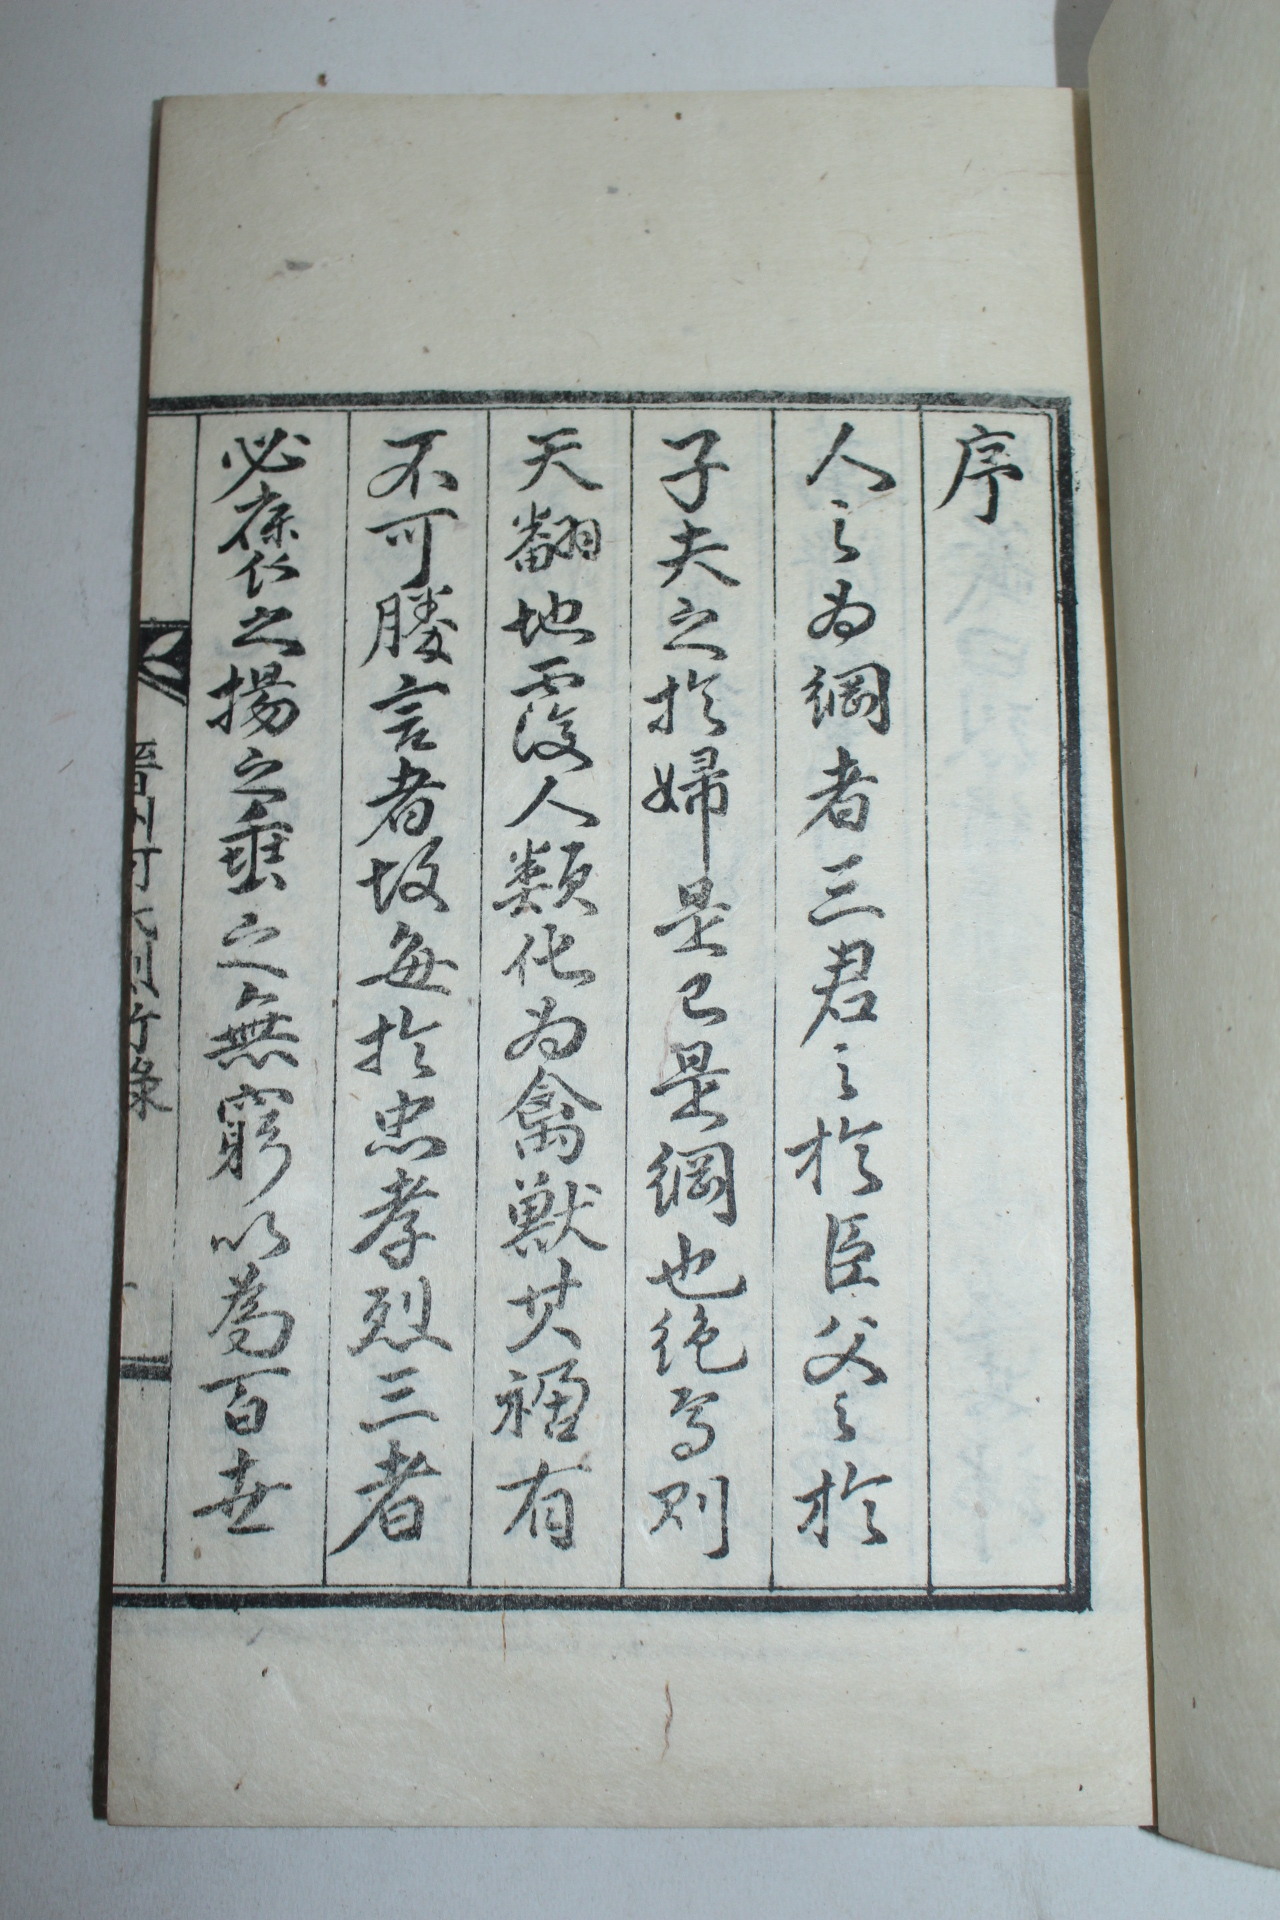 1935년 경성간행 진주하씨열행록(晋州河氏烈行錄) 1책완질